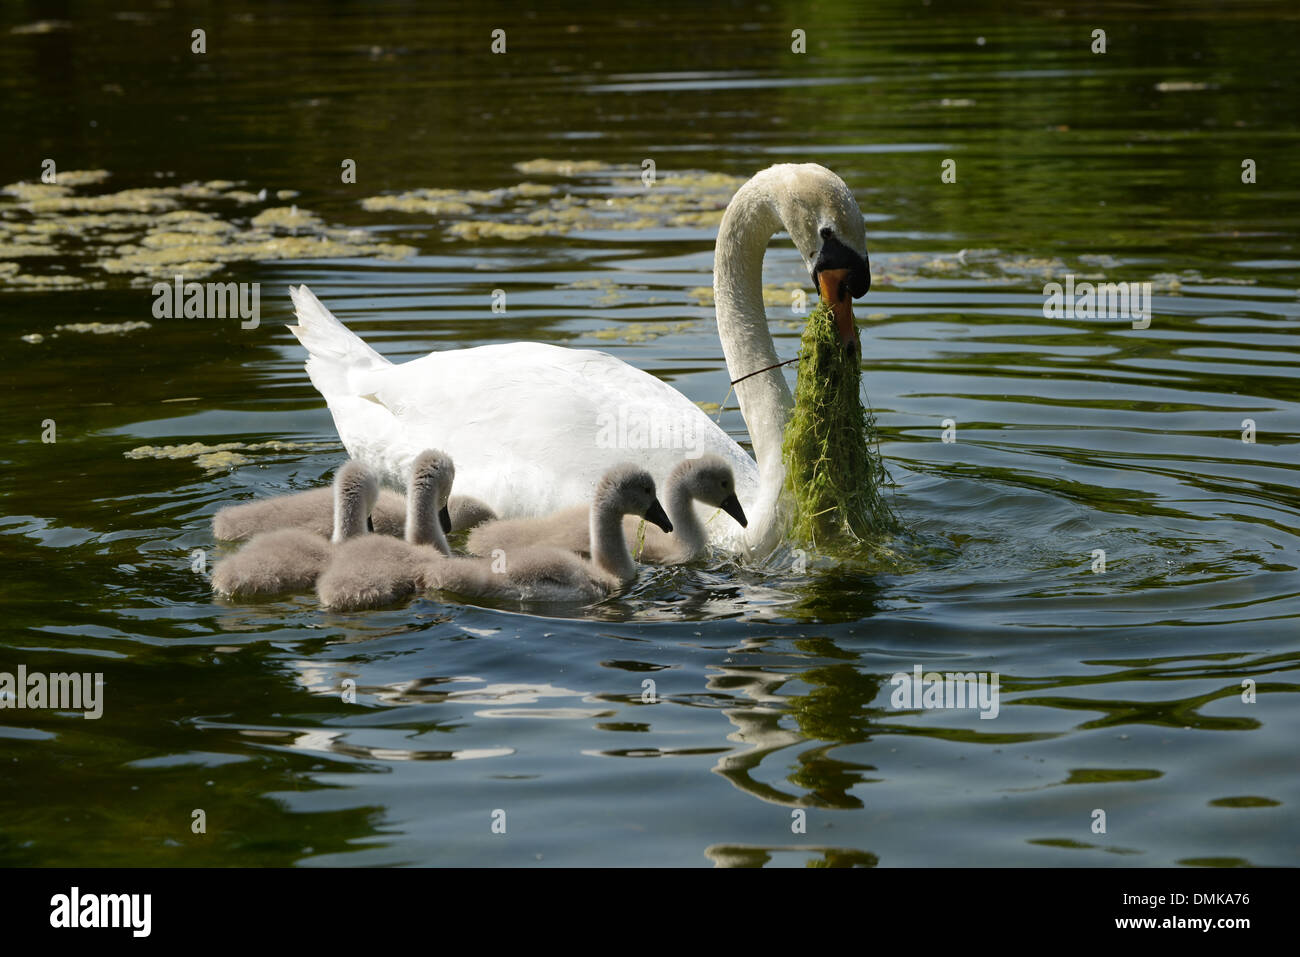 Cisne madre alimentar a sus cinco bebés en el agua. Foto de stock